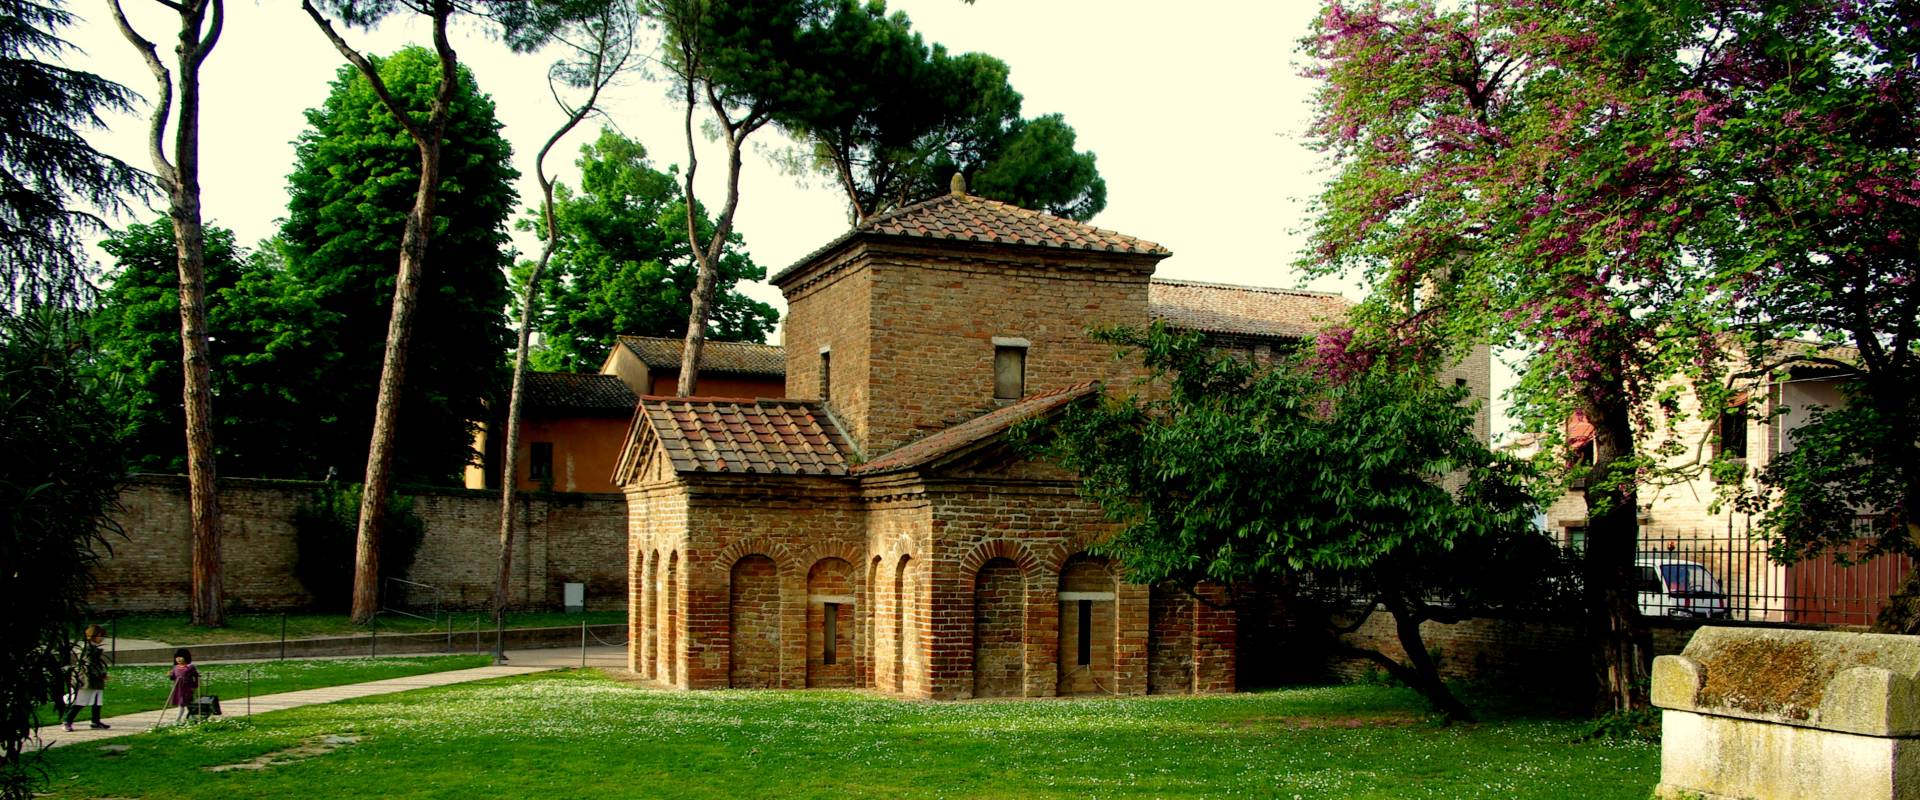 Il Mausoleo di Galla Placidia ai primi sentori della primavera photo by Federfabbri